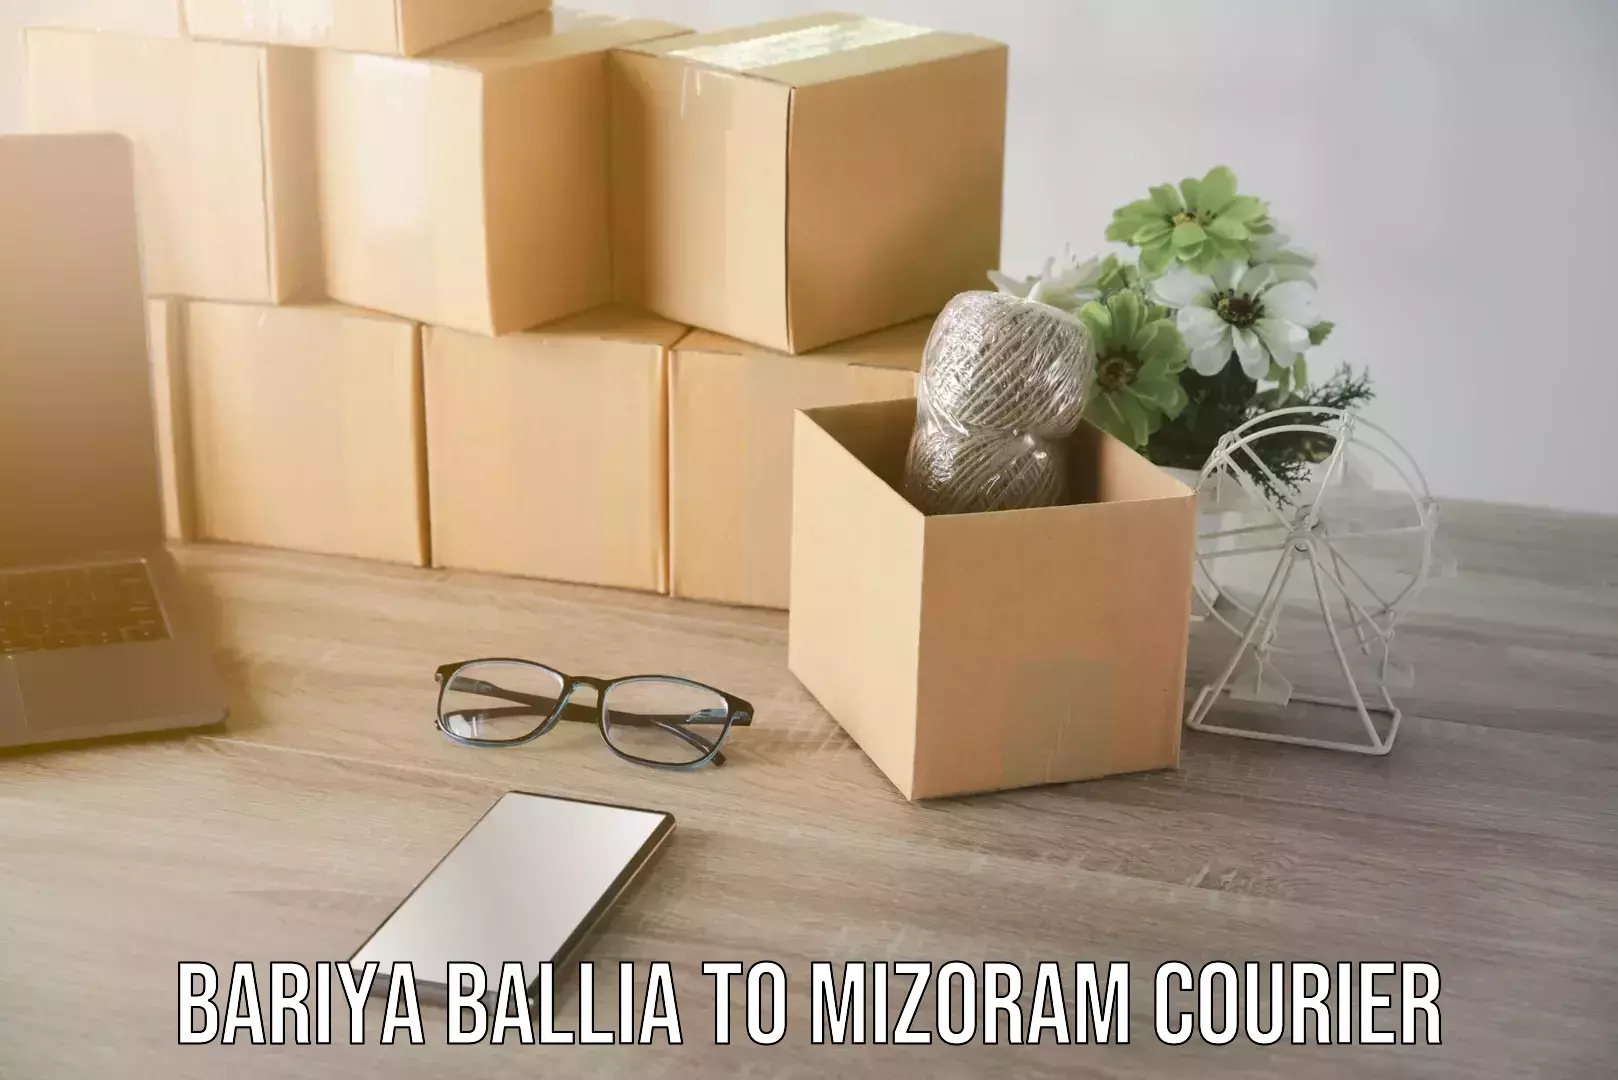 Urgent courier needs Bariya Ballia to Mizoram